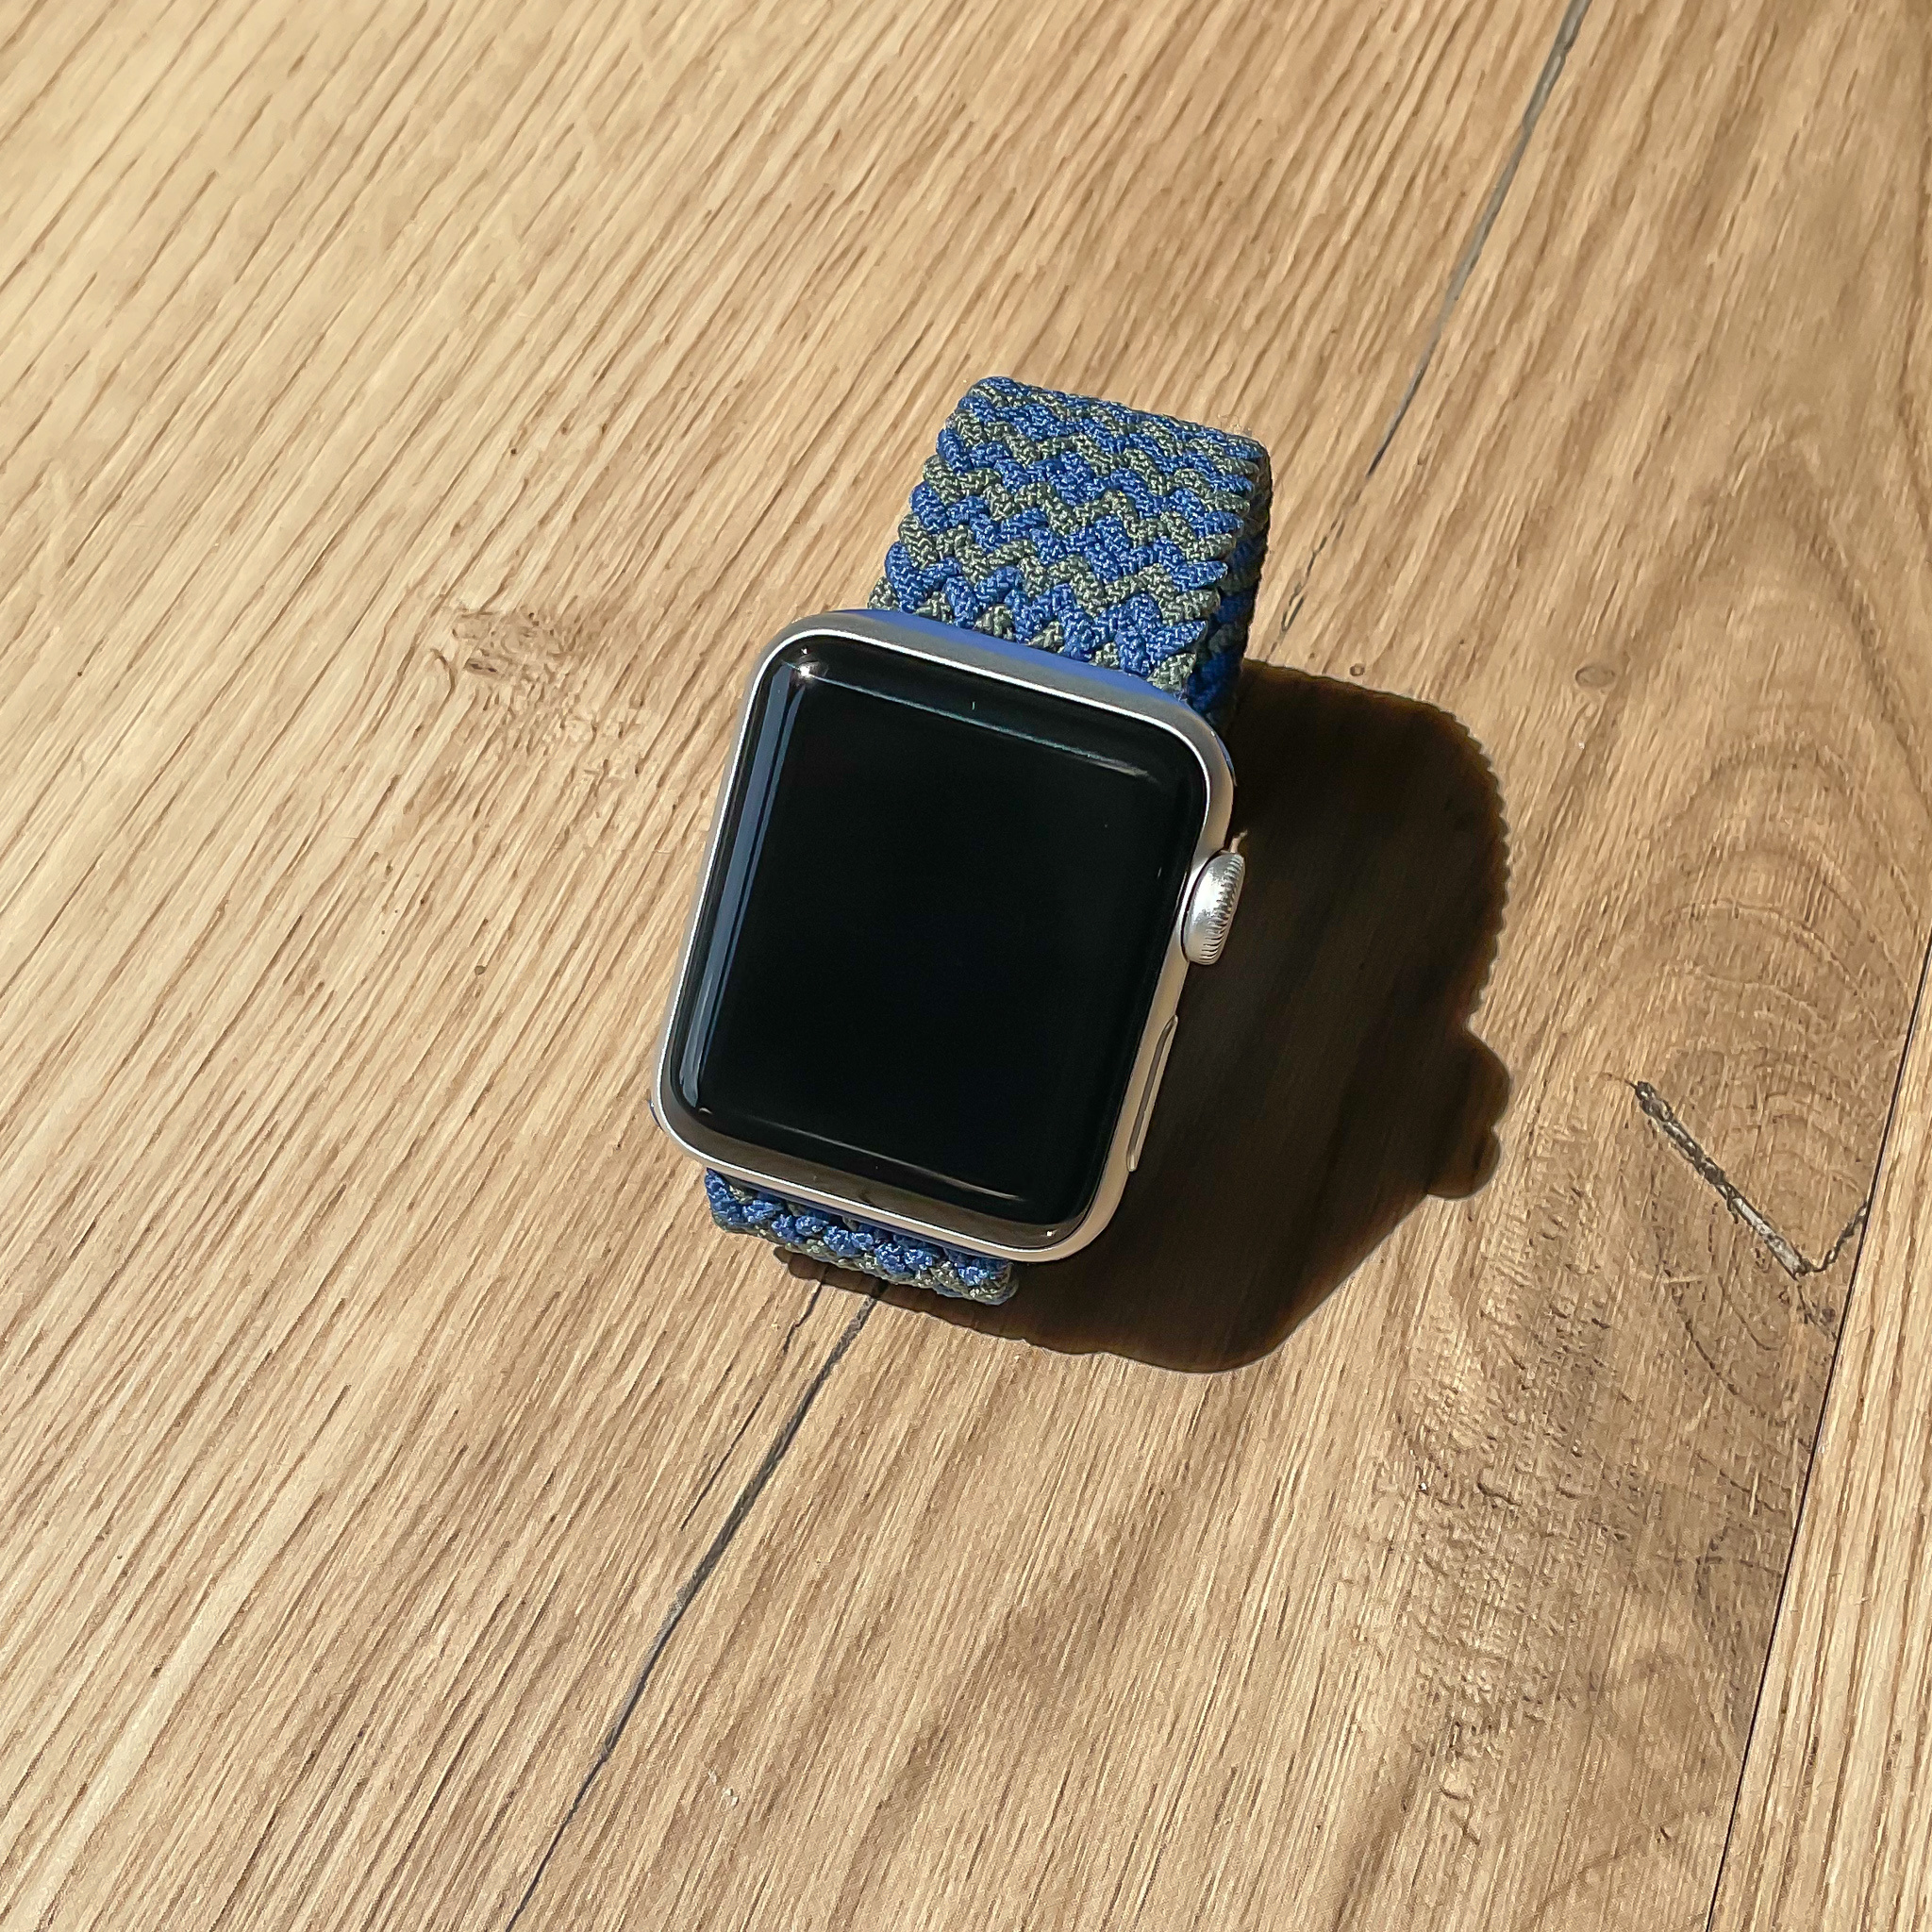  Apple Watch Nejlon fonott szóló pánt - kék-zöld keverék